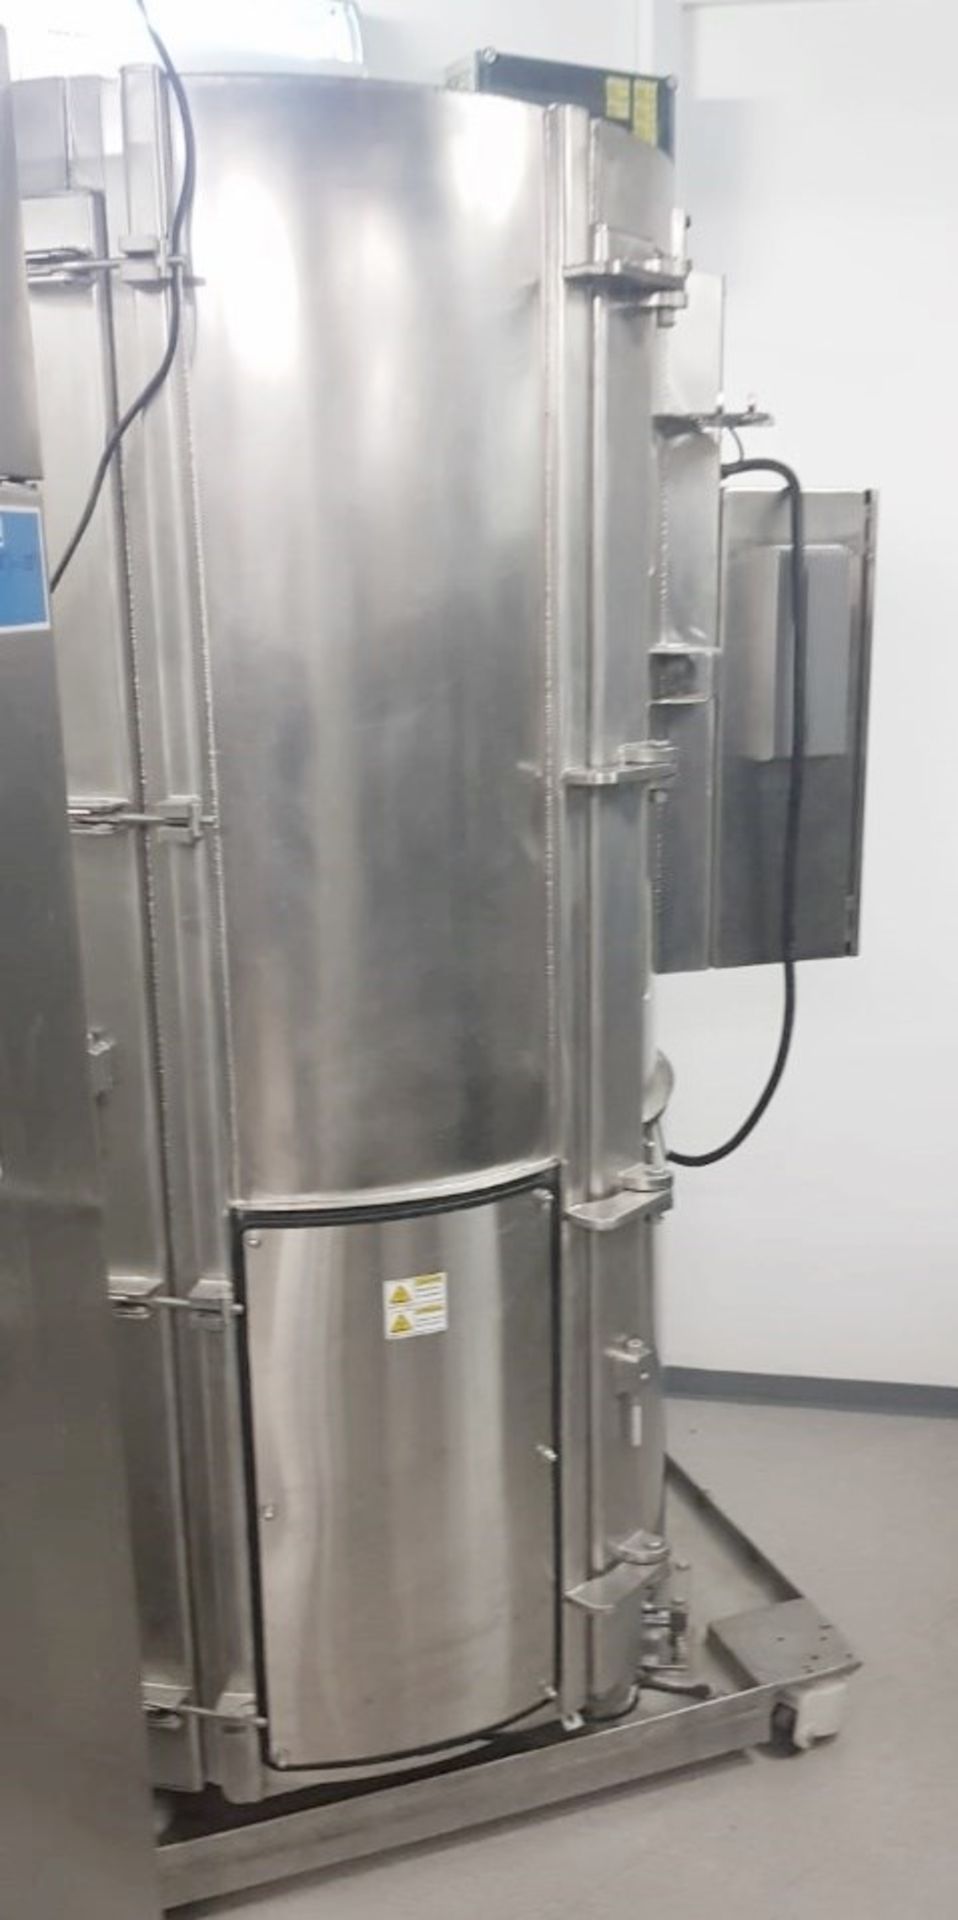 1 x THERMO SCIENTIFIC HyClone Single Use Bioreactor (S.U.B.), 1000L - Laboratory Closure - Ref: - Image 2 of 3